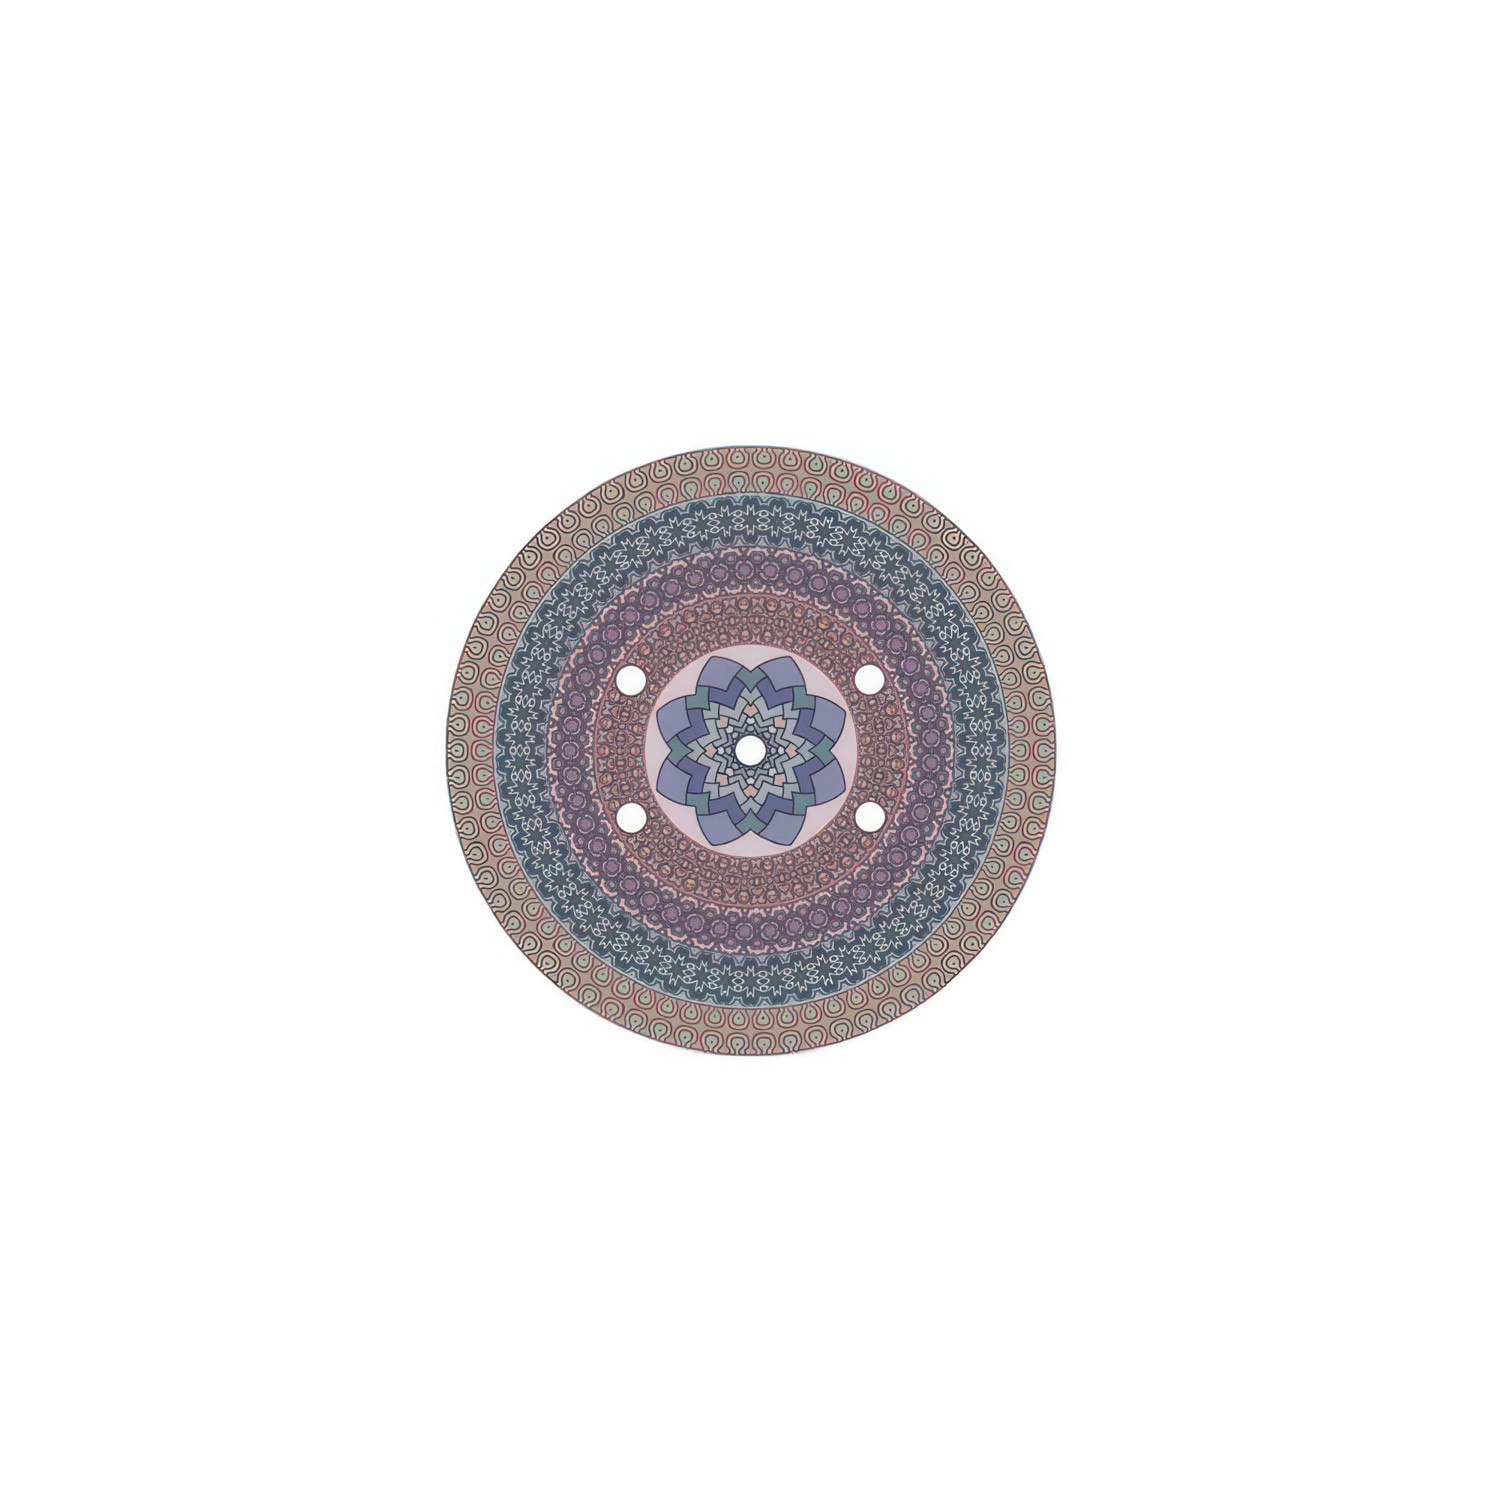 Rundes 5-Loch und 4 Seitenlöchern Lampenbaldachin, Rose-One-Abdeckung, 200 mm Durchmesser - PROMO